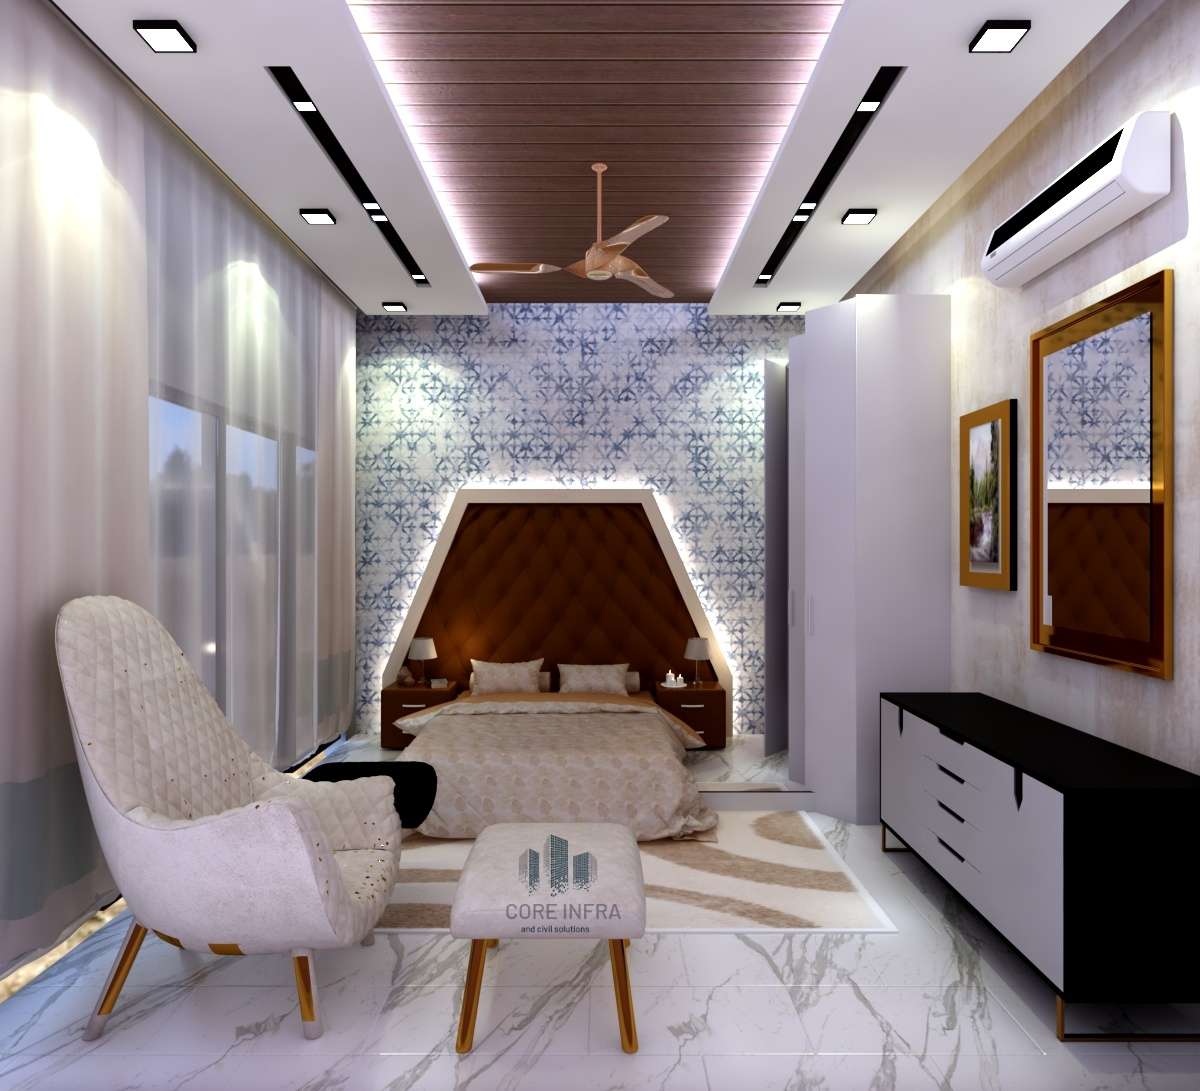 Ceiling, Furniture, Lighting, Bedroom, Storage Designs by Civil Engineer Shubham Kushwah, Indore | Kolo